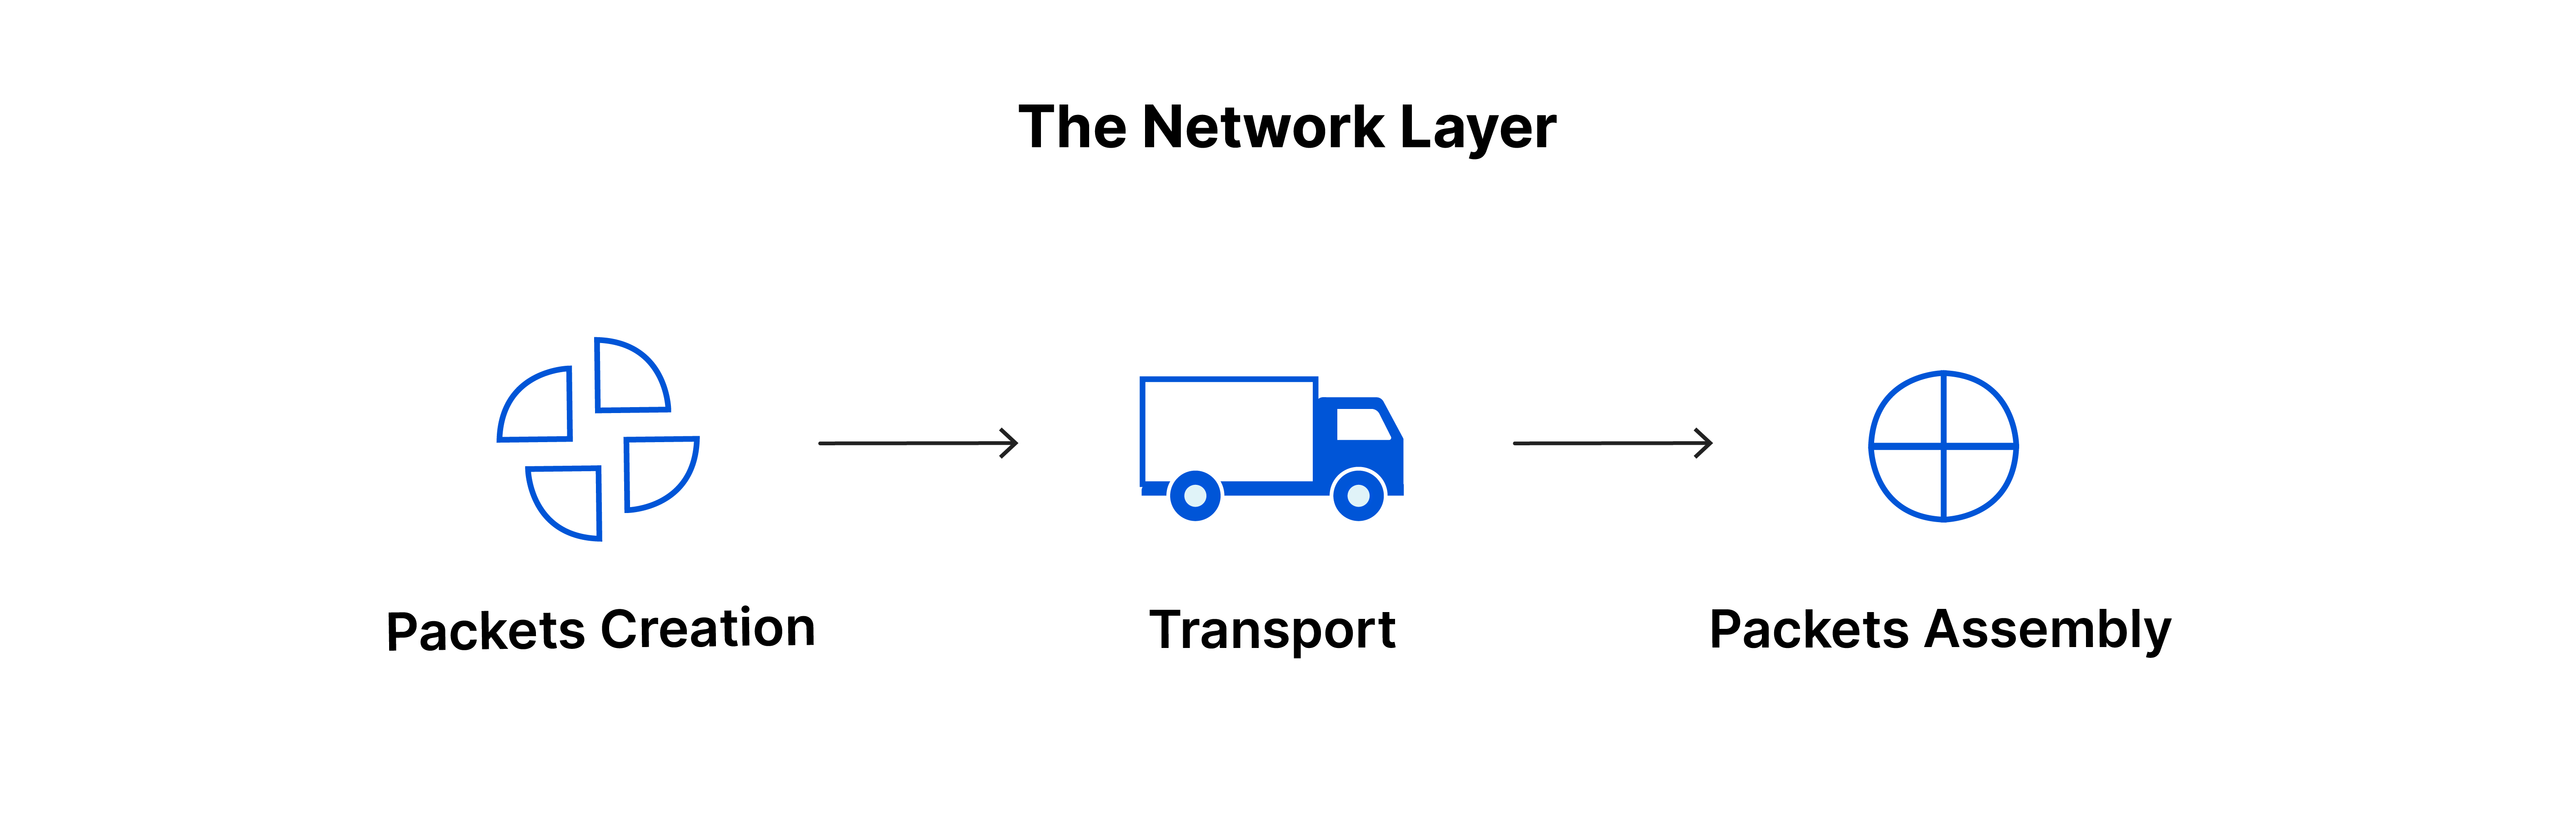 網路層：封包建立、傳輸、封包組裝